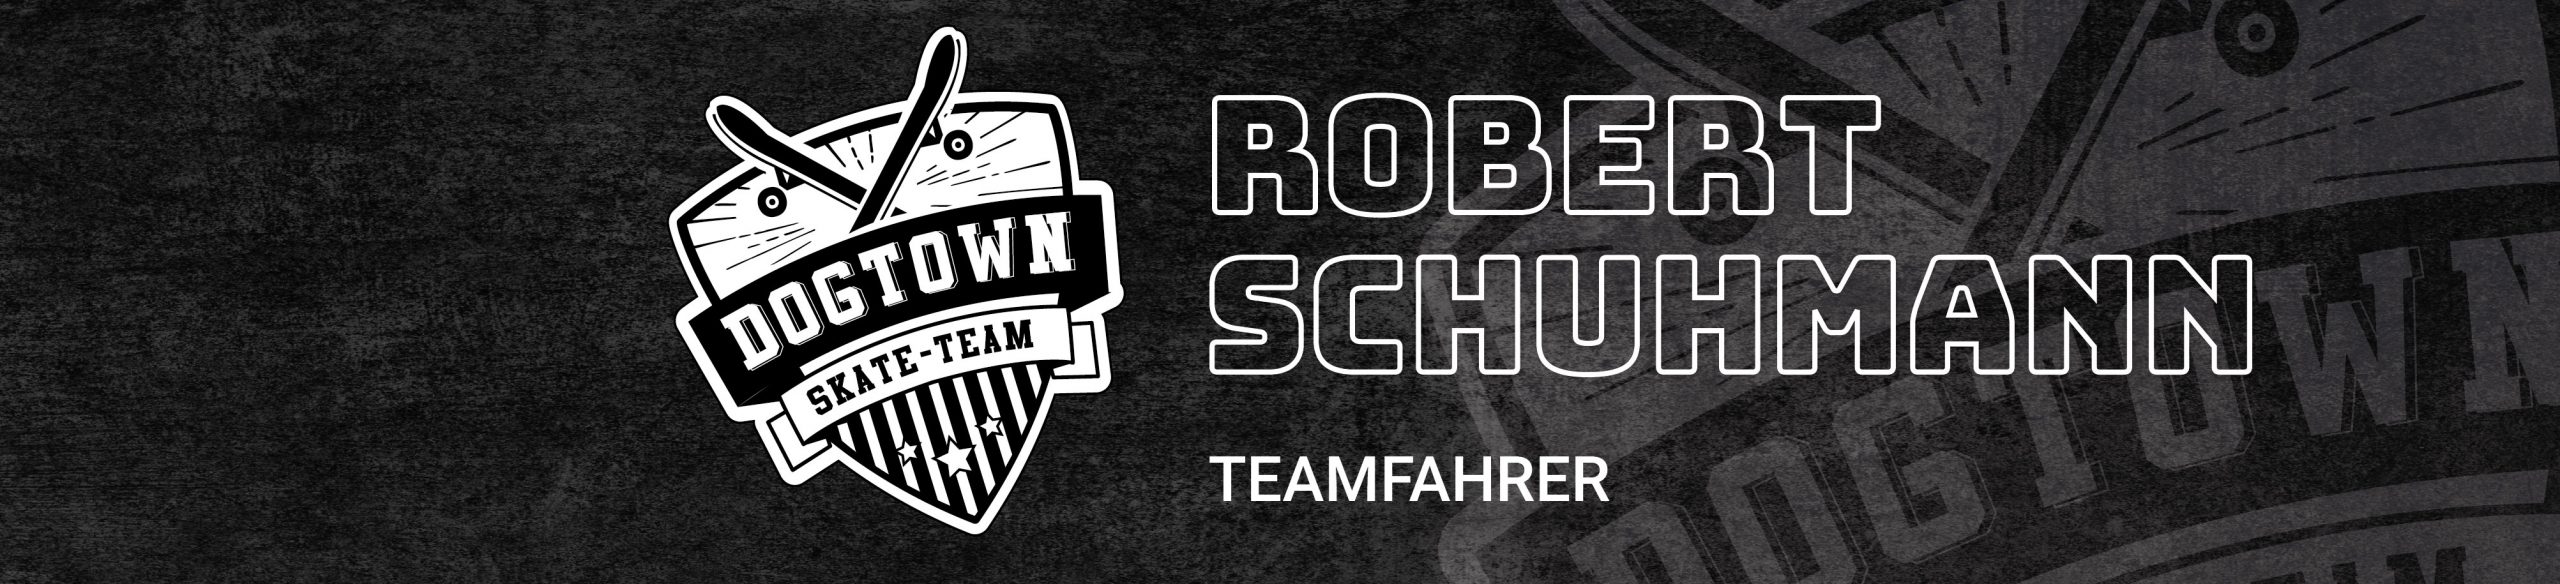 Robert Schuhmann Teamfahrer Dogtown-Skateshop